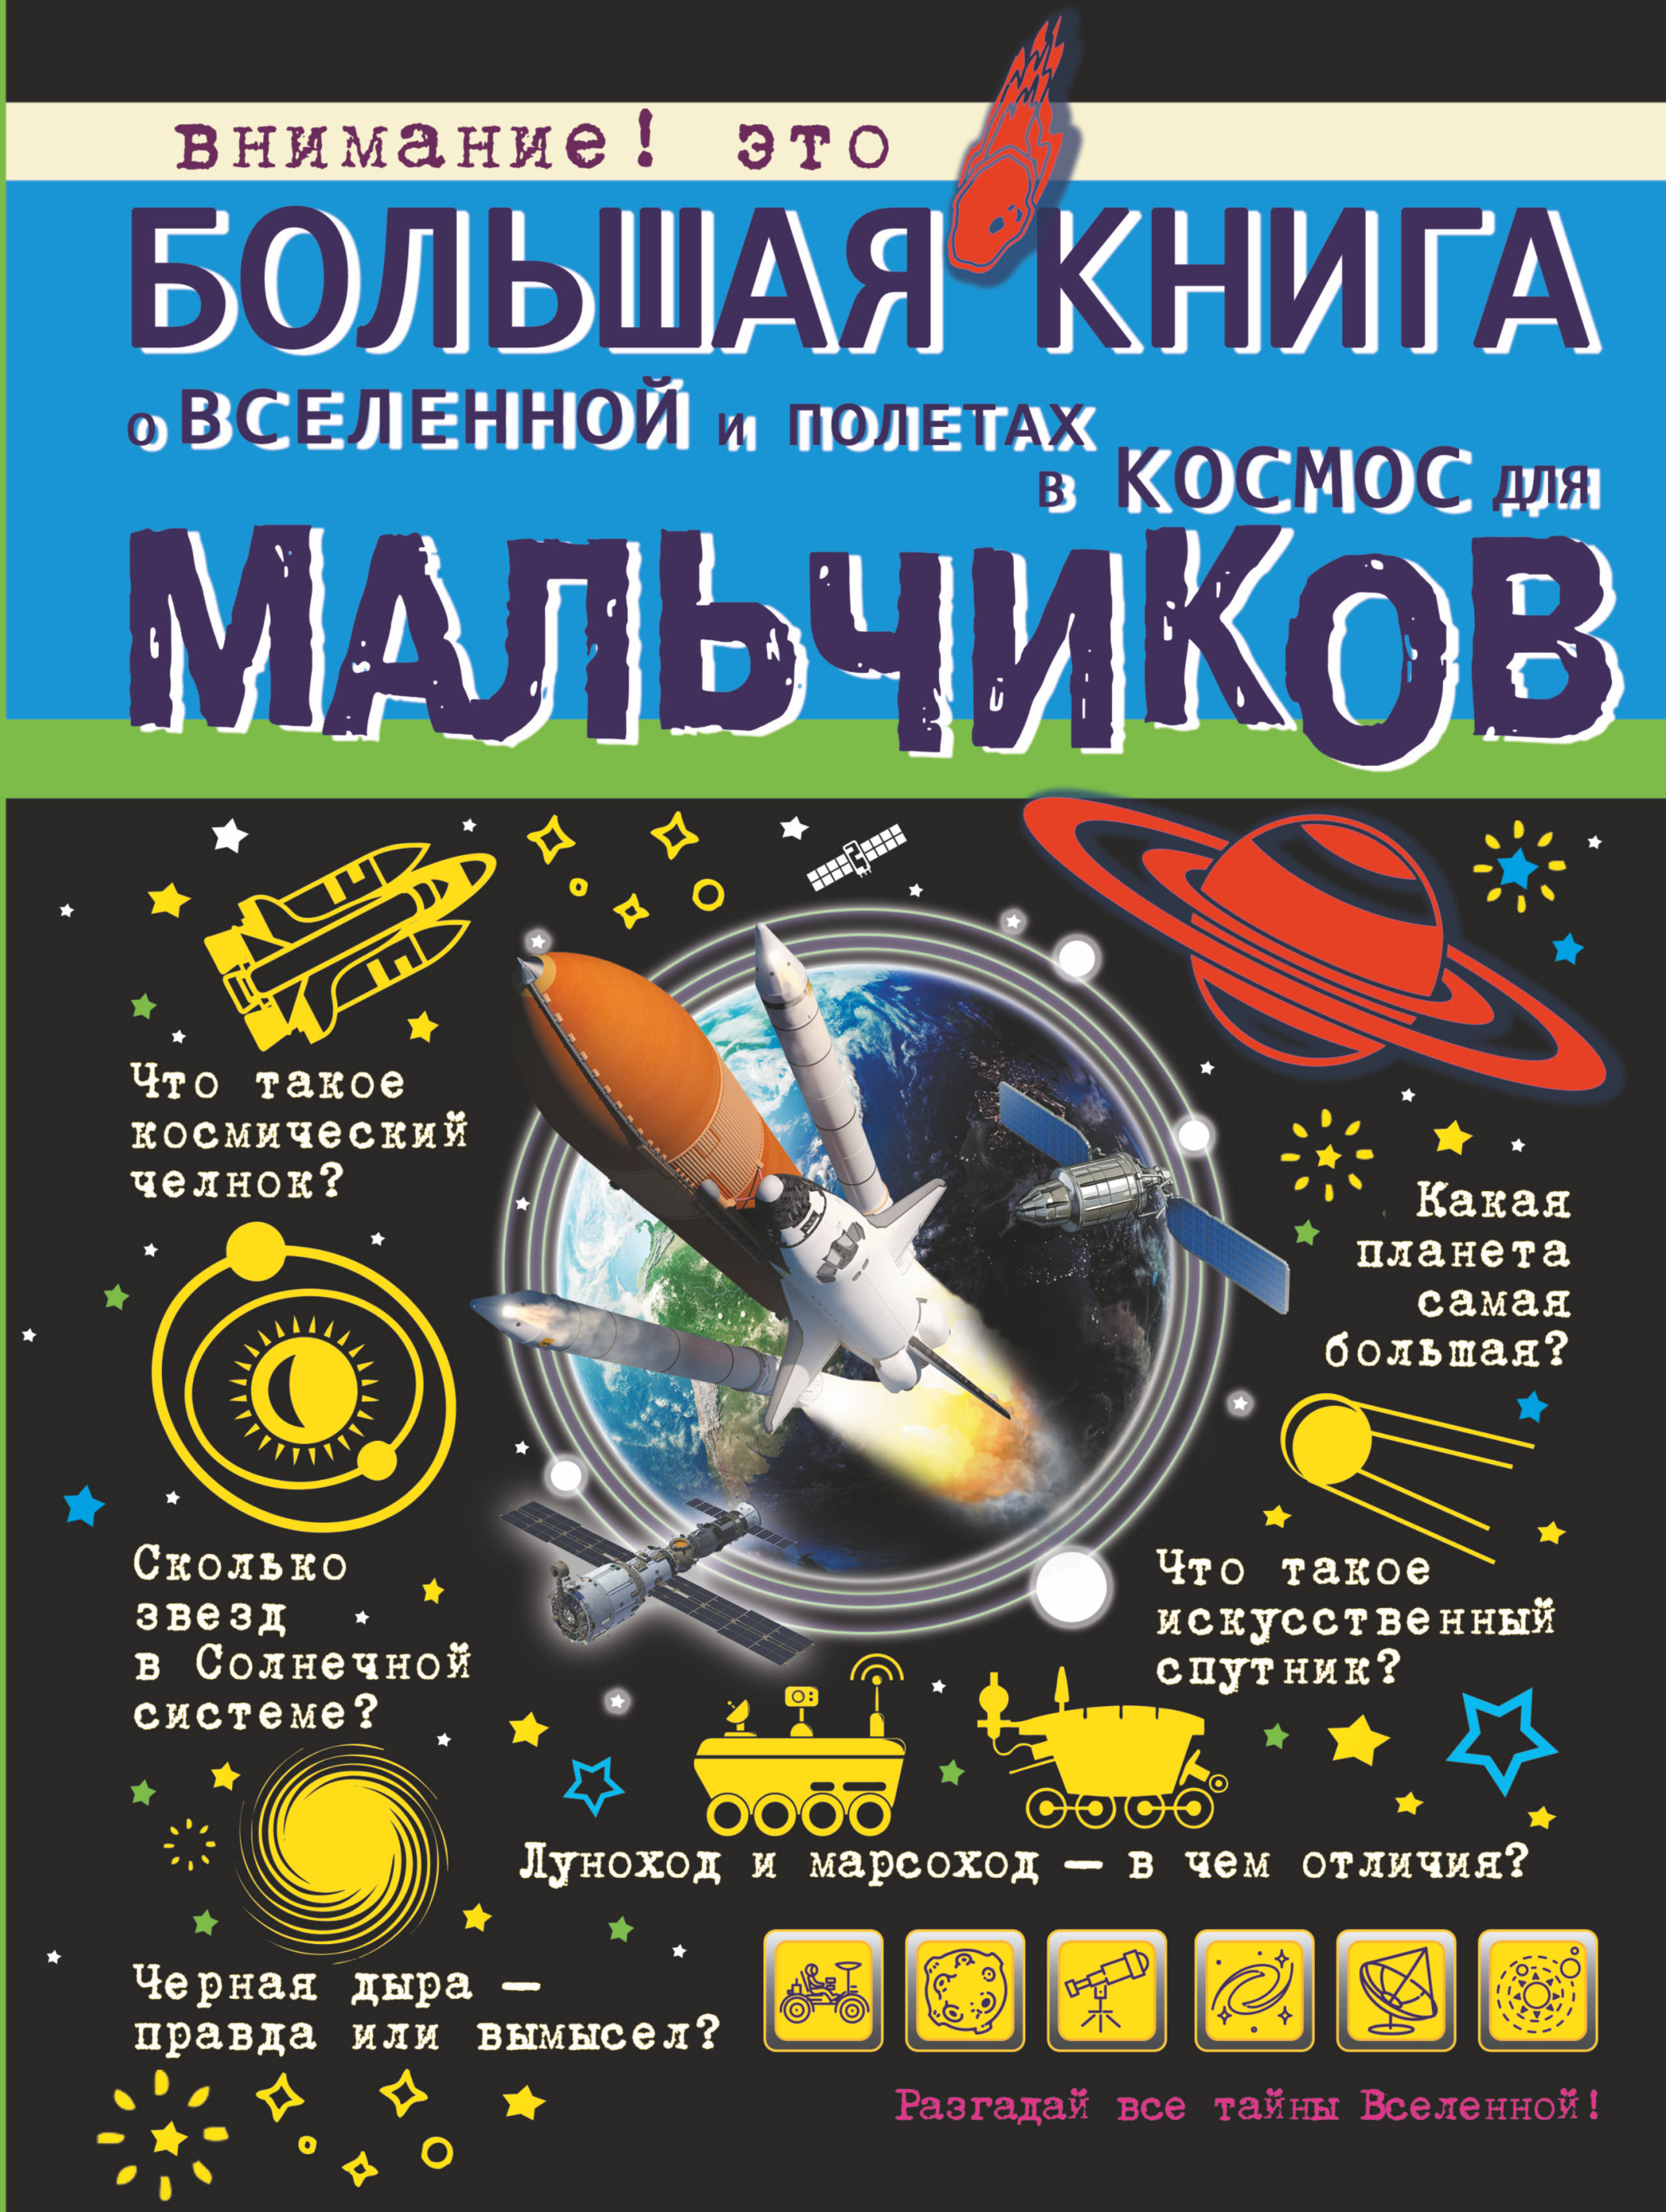 Сколько книг в космосе. Филиппова м.д., Ликсо в.в., Кошевар д.в. "большая книга о Вселенной и полетах в космос для мальчиков". Детские книги про космос. Книги о космосе для детей.